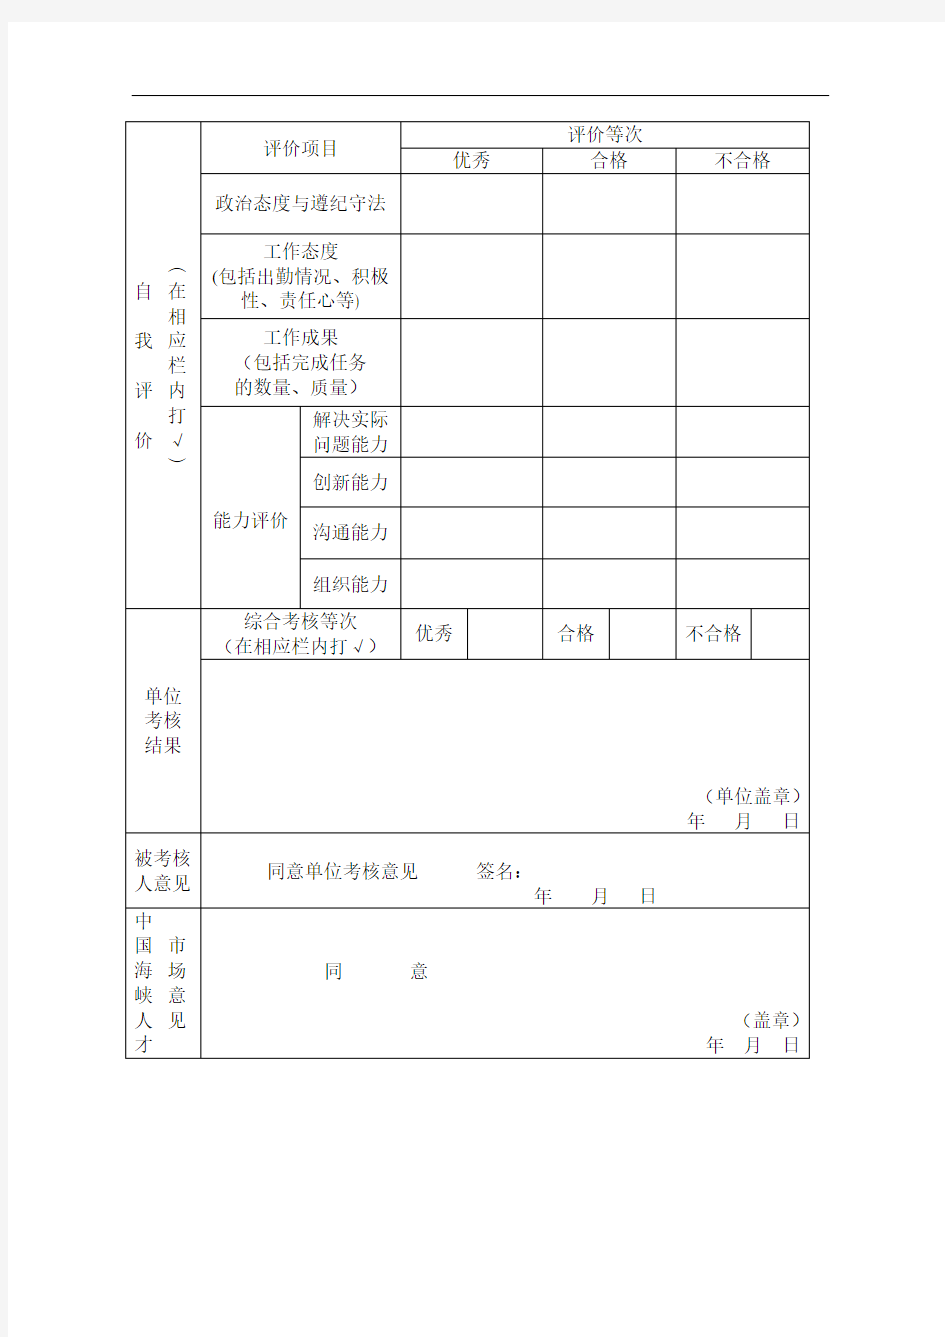 中国海峡人才市场莆田分部人事委托代理人员年度考核登记表